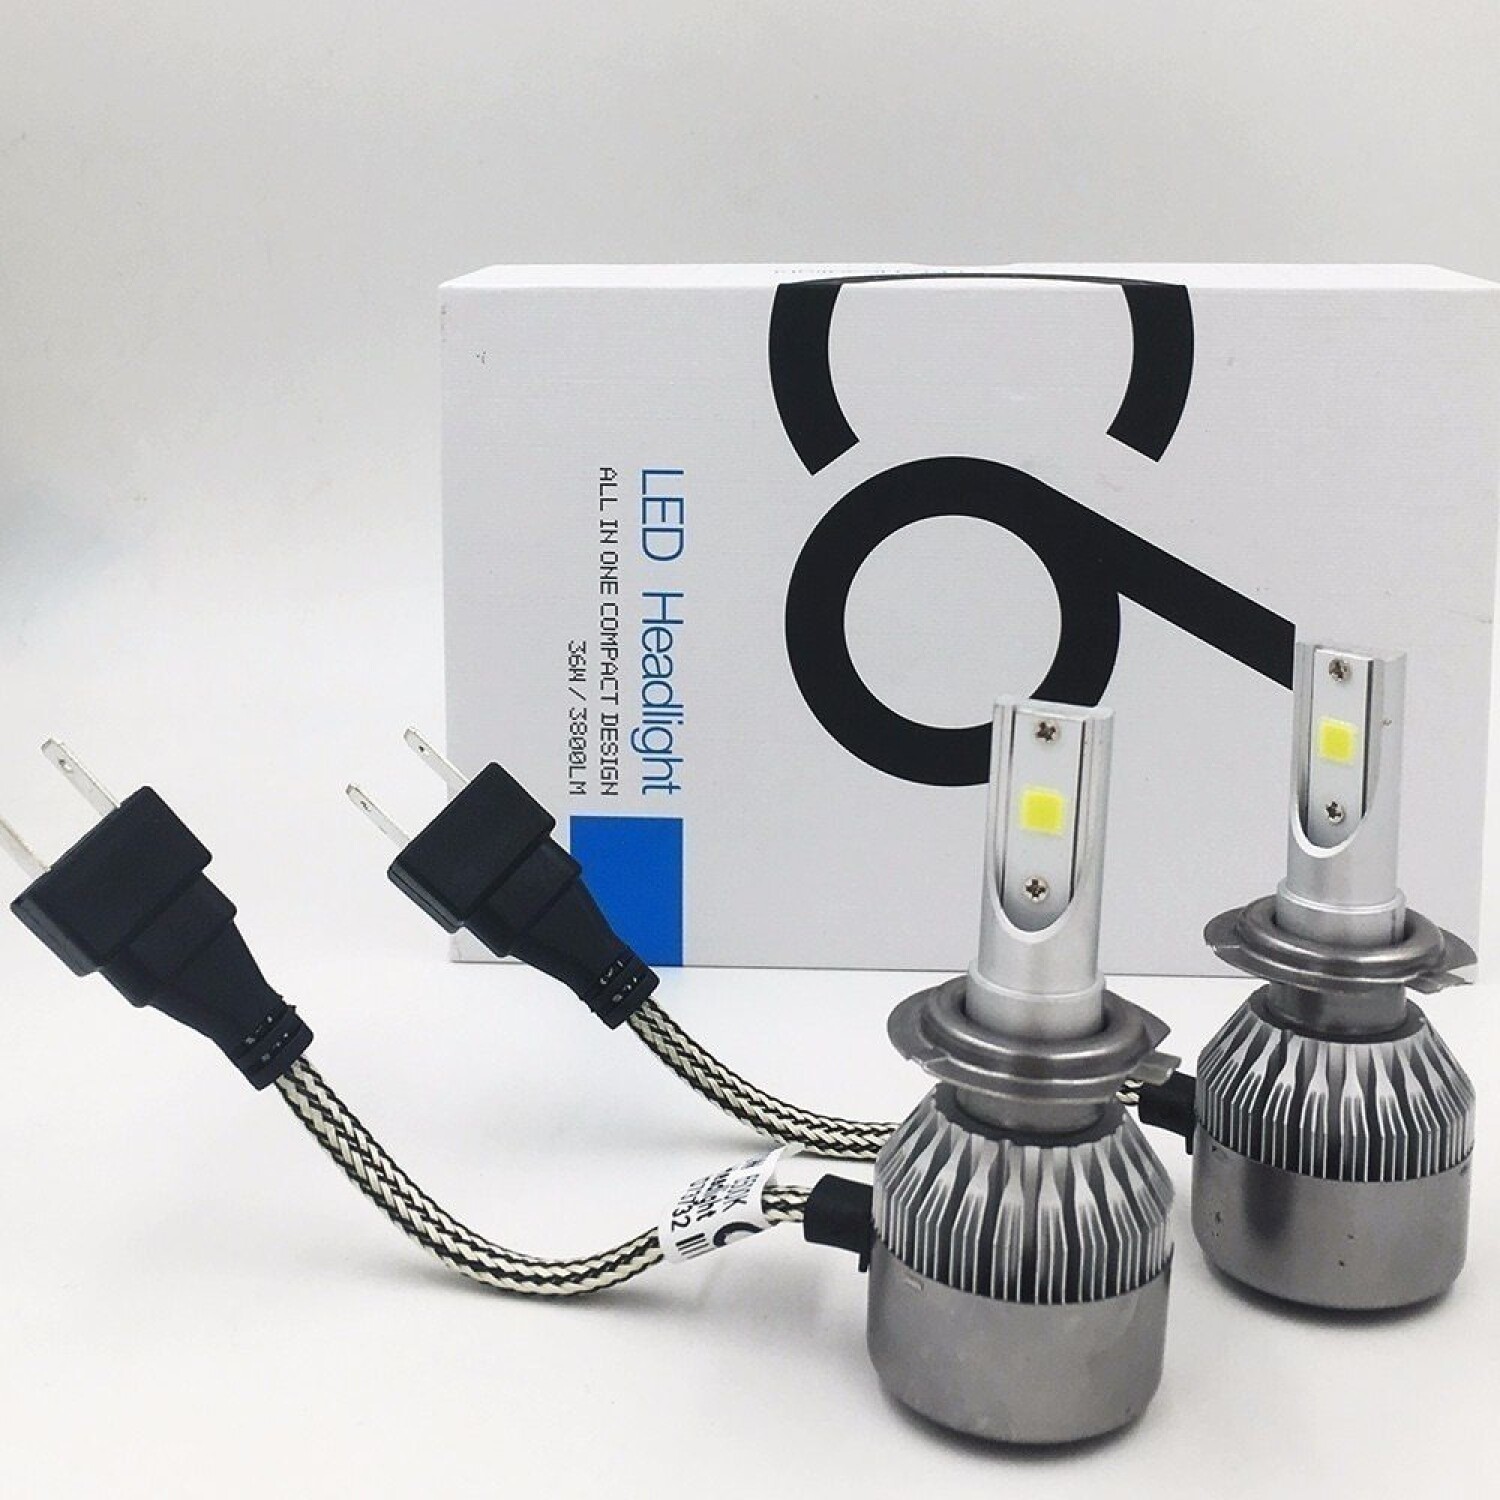 Kit lámparas H7 LED ventiladas para Automóvil y Moto - Tecnología